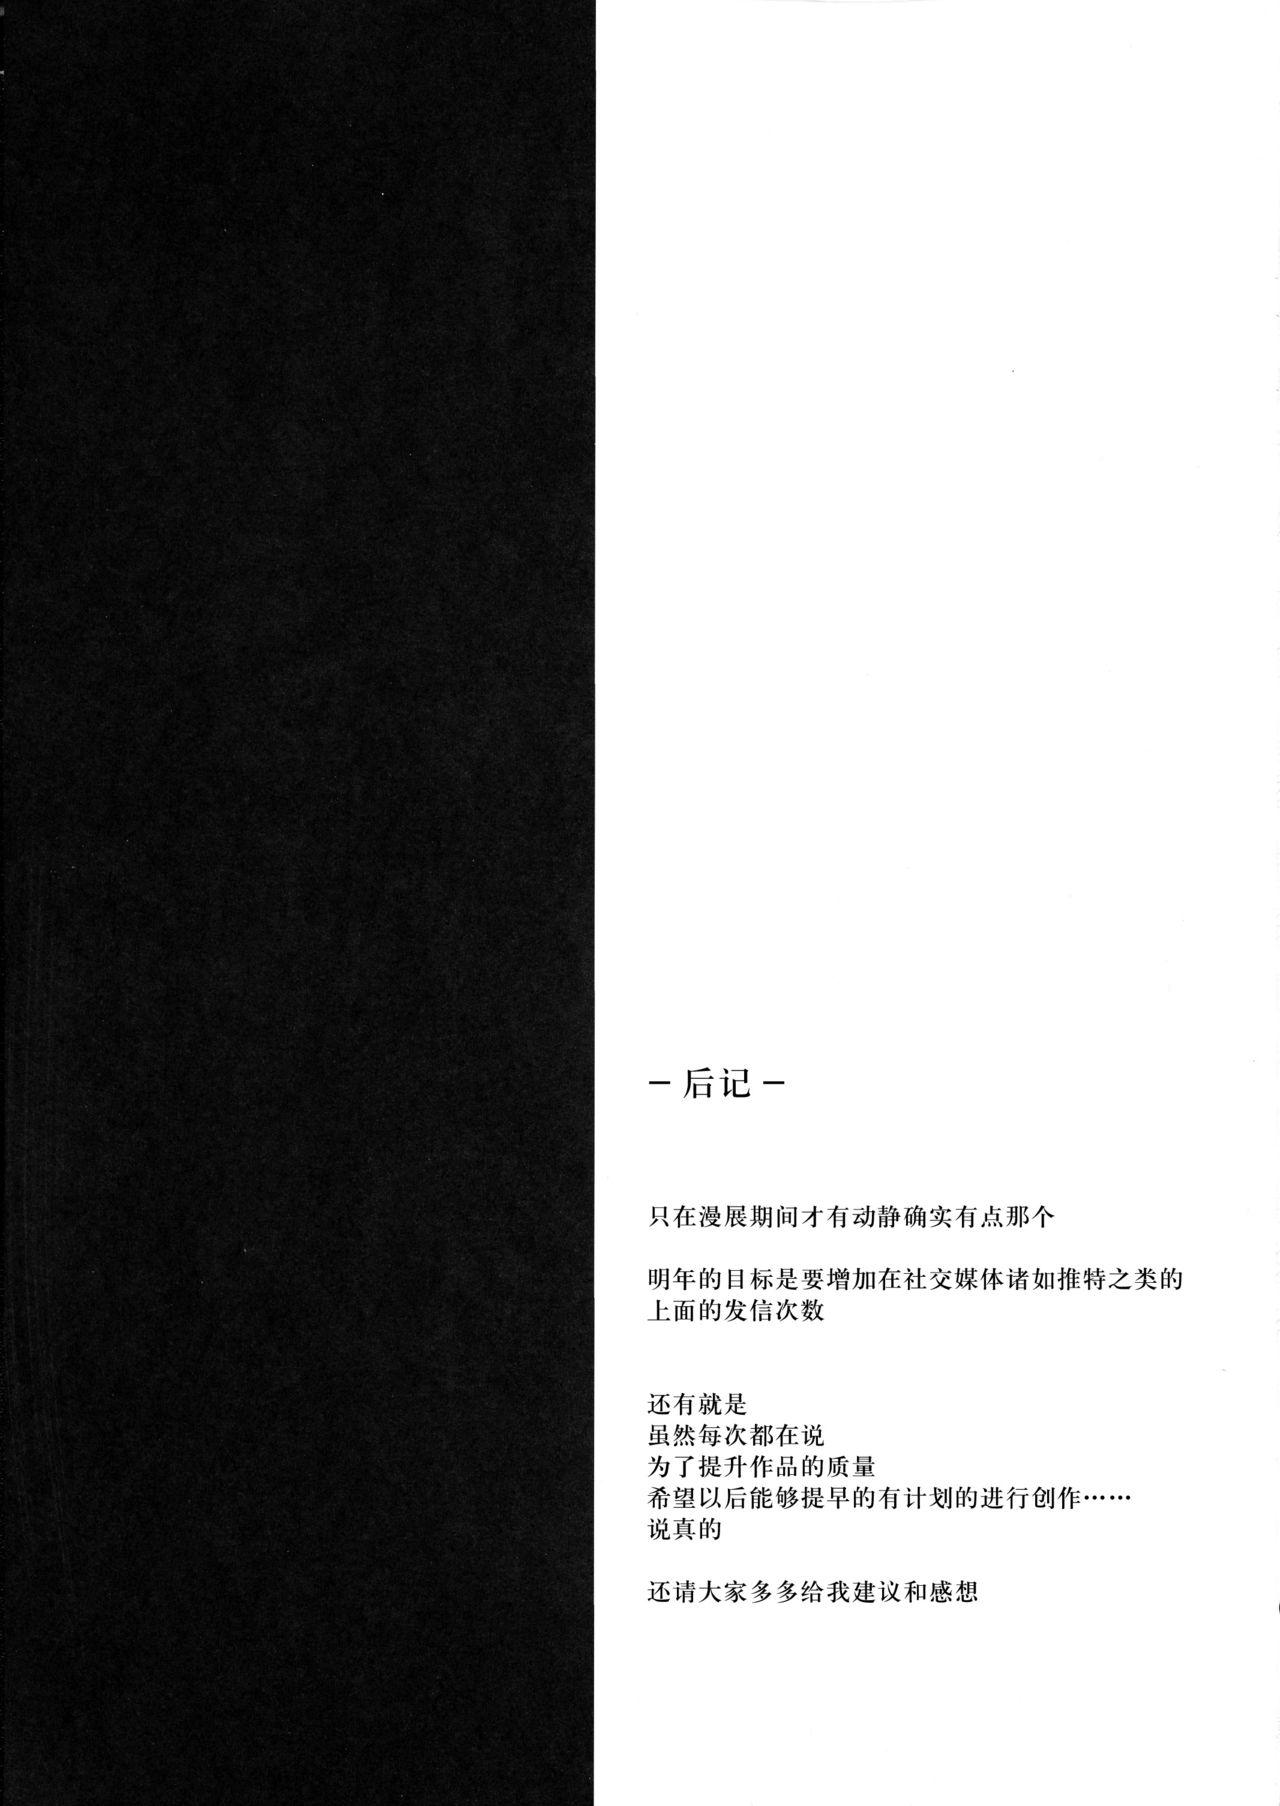 Yakiniku Teikoku (HayateMegumi)LiverSashiHitosuji300-nen tập trung vào gan bò 300 năm (FinalFantasyVII)Chinese (18 trang)-第1章-图片173